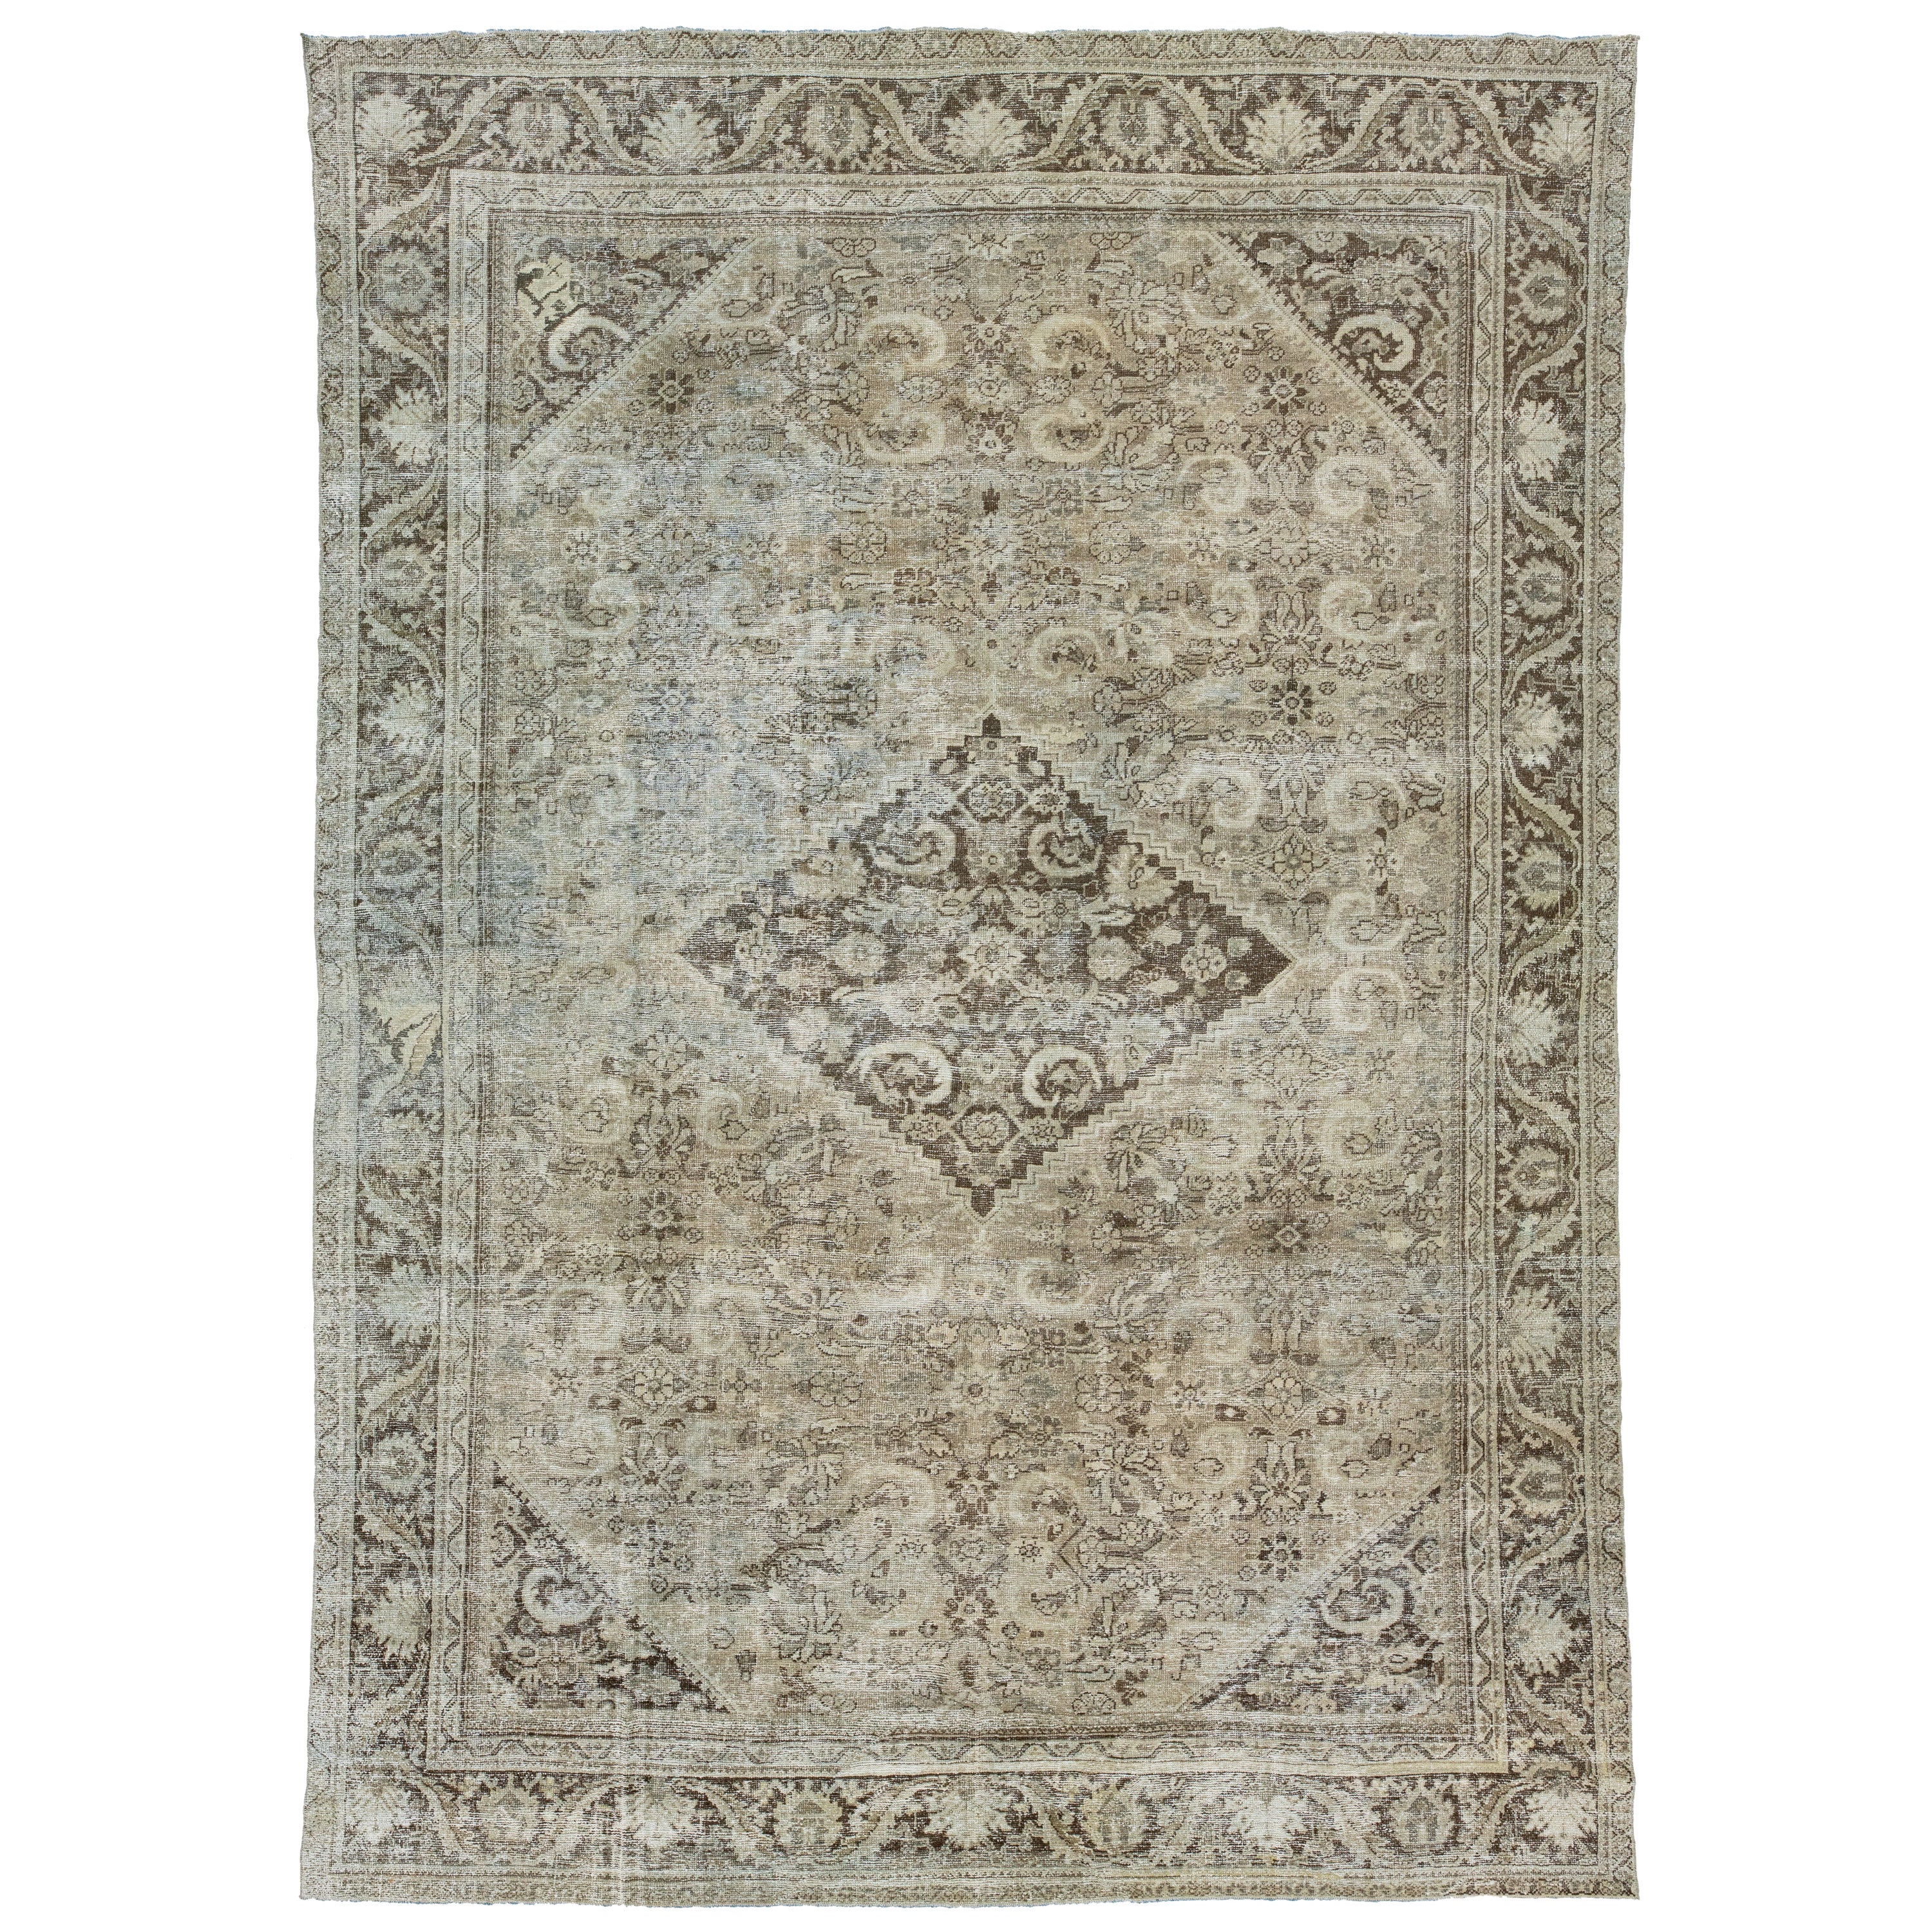 Brown Antique Persian Mahal Wool Rug With Allover Pattern From The 1900s (Tapis de laine persan Mahal à motifs variés datant des années 1900) en vente